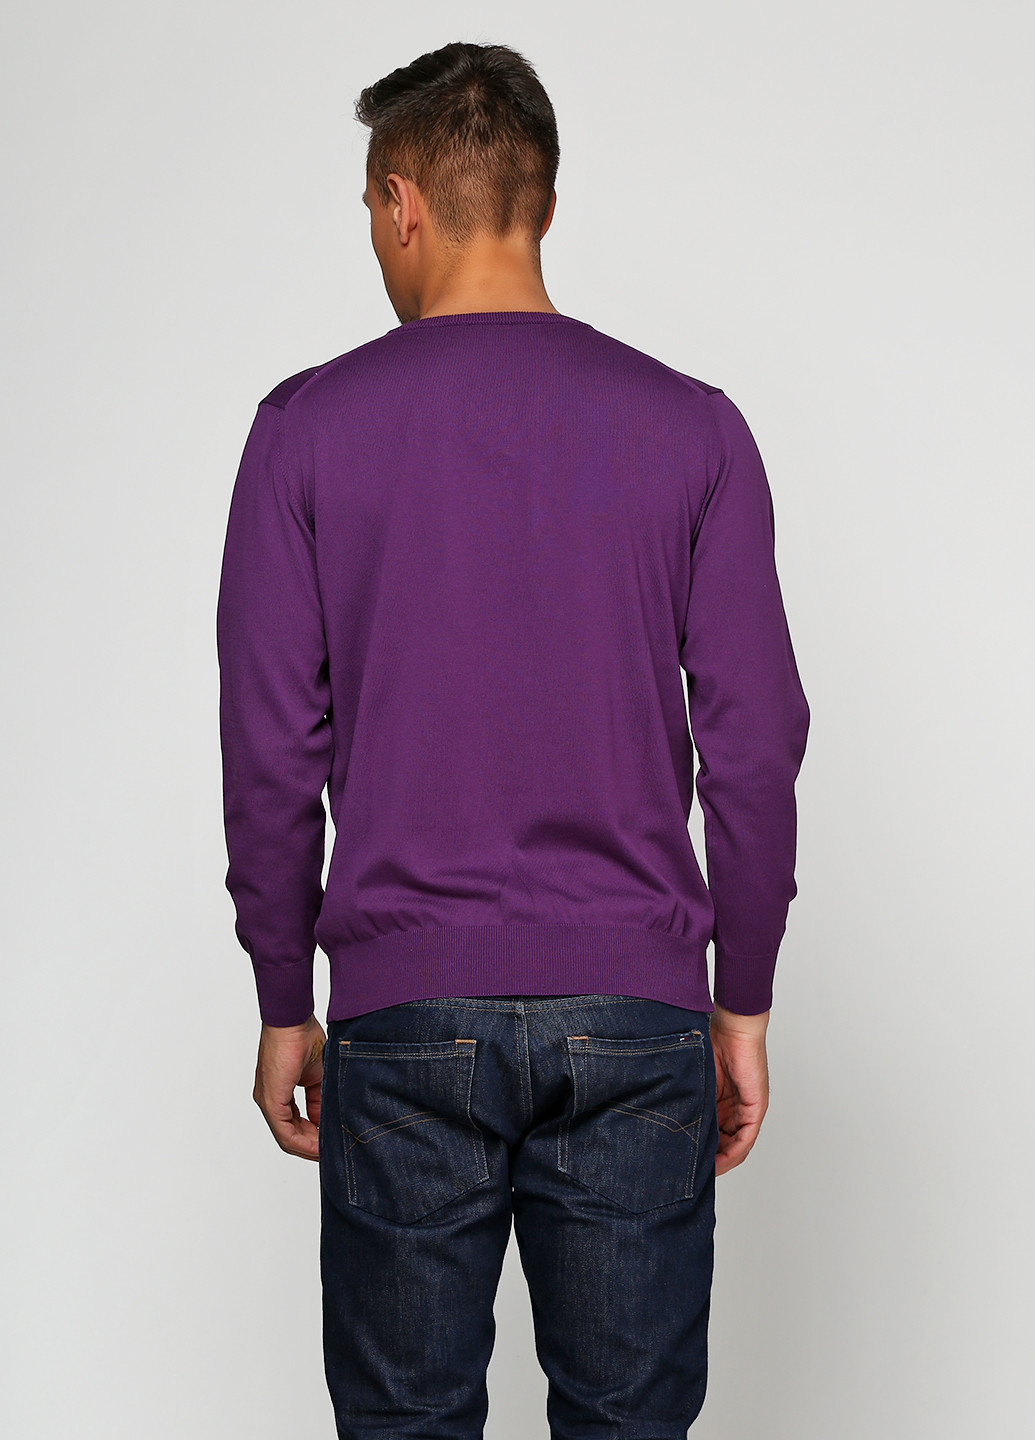 Фиолетовый демисезонный пуловер пуловер Barbieri